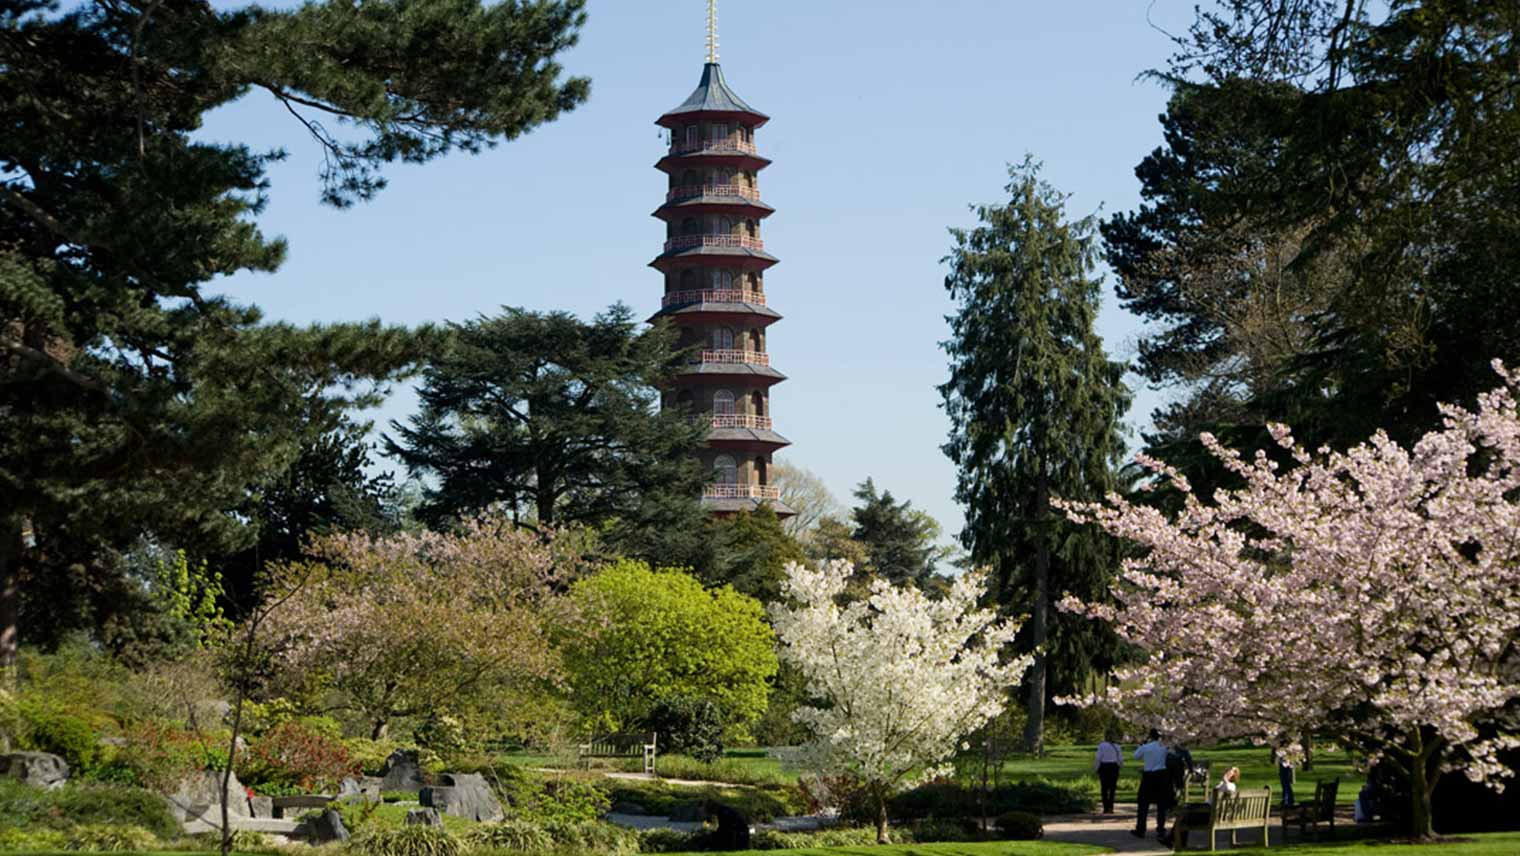 Kew Gardens Pagoda